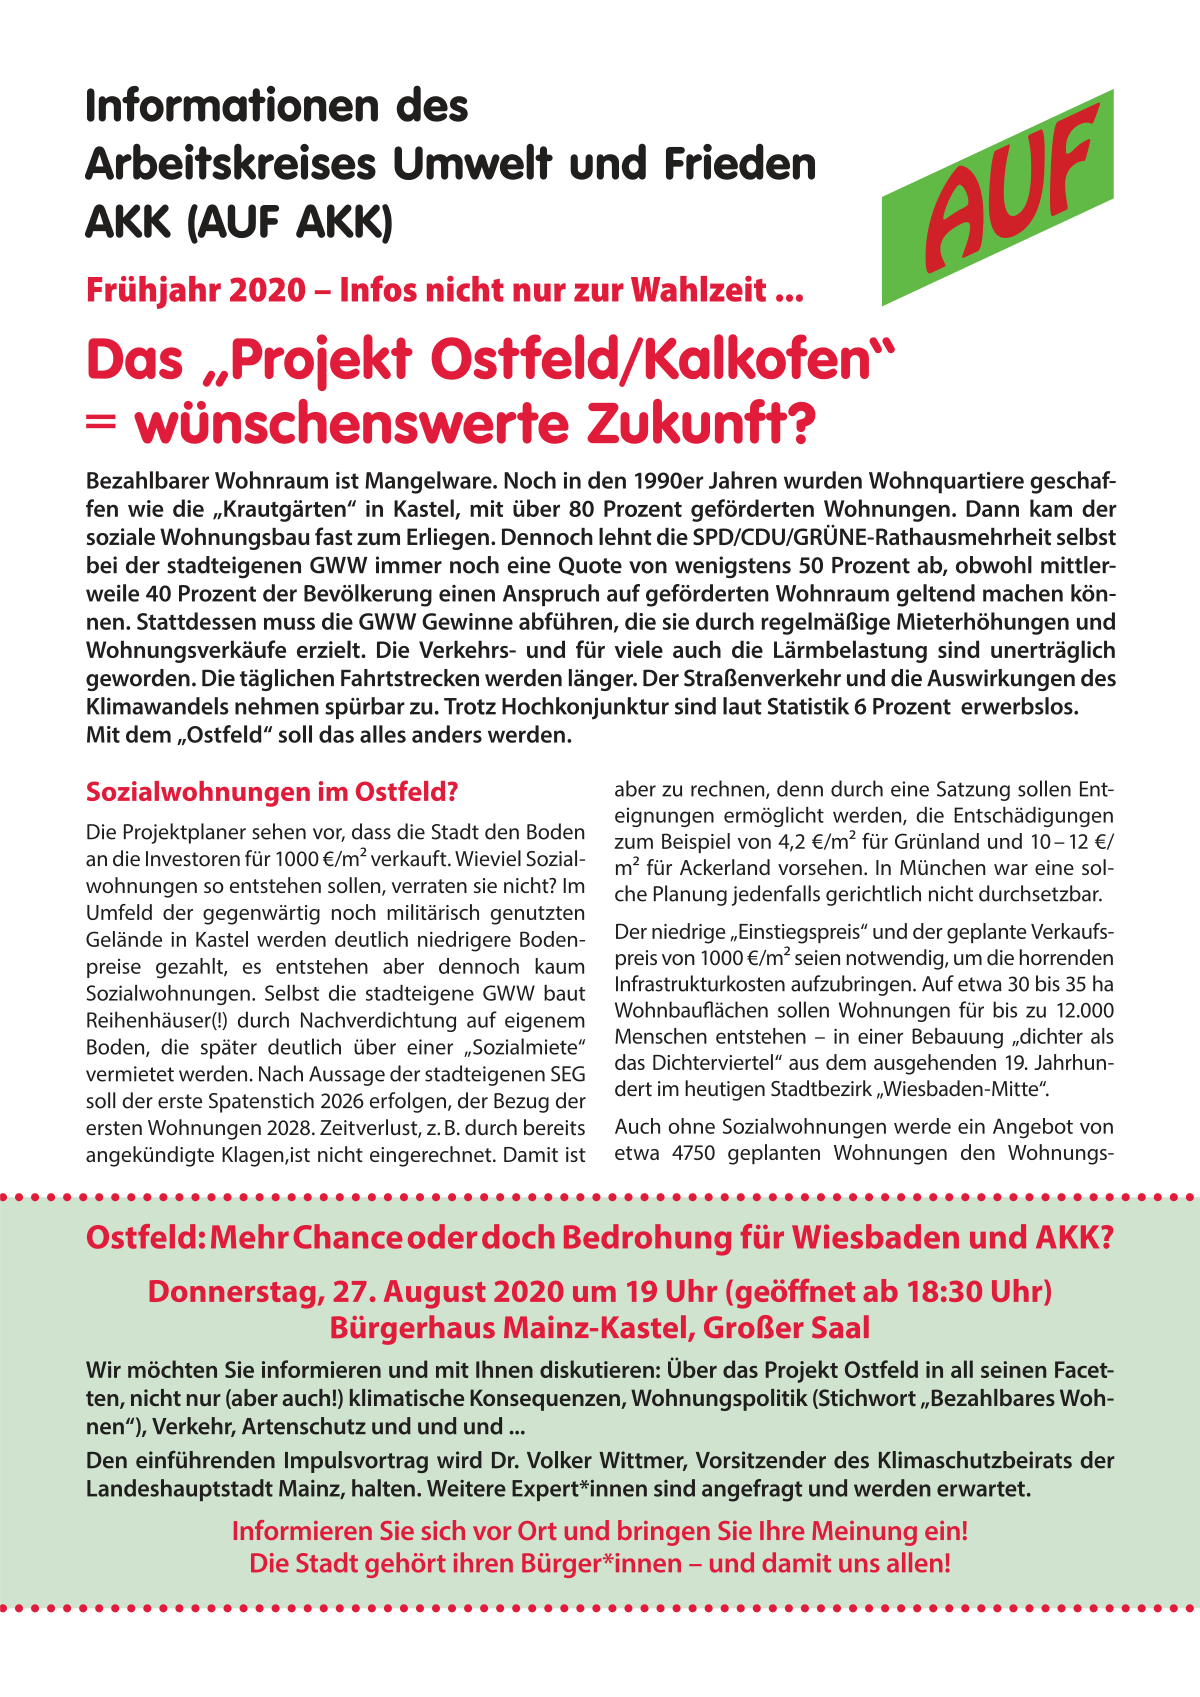 AUF Info Ostfeld aktualisiert 08-2020
Veranstaltung zum Ostfeld